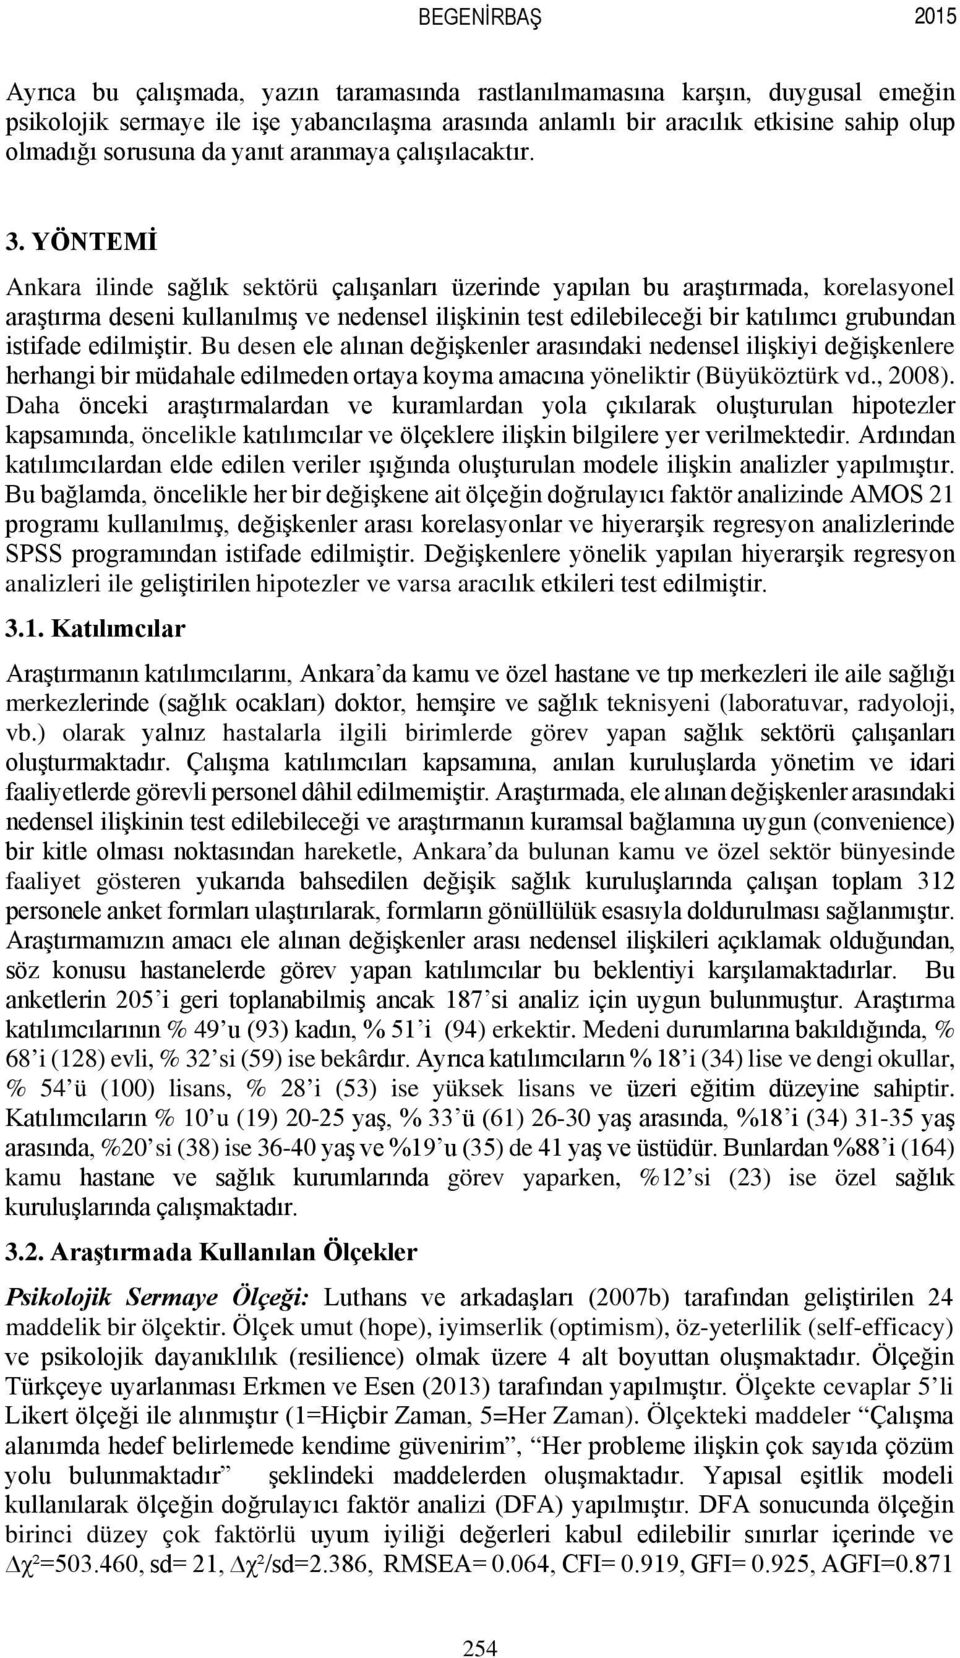 YÖNTEMİ Ankara ilinde sağlık sektörü çalışanları üzerinde yapılan bu araştırmada, korelasyonel araştırma deseni kullanılmış ve nedensel ilişkinin test edilebileceği bir katılımcı grubundan istifade